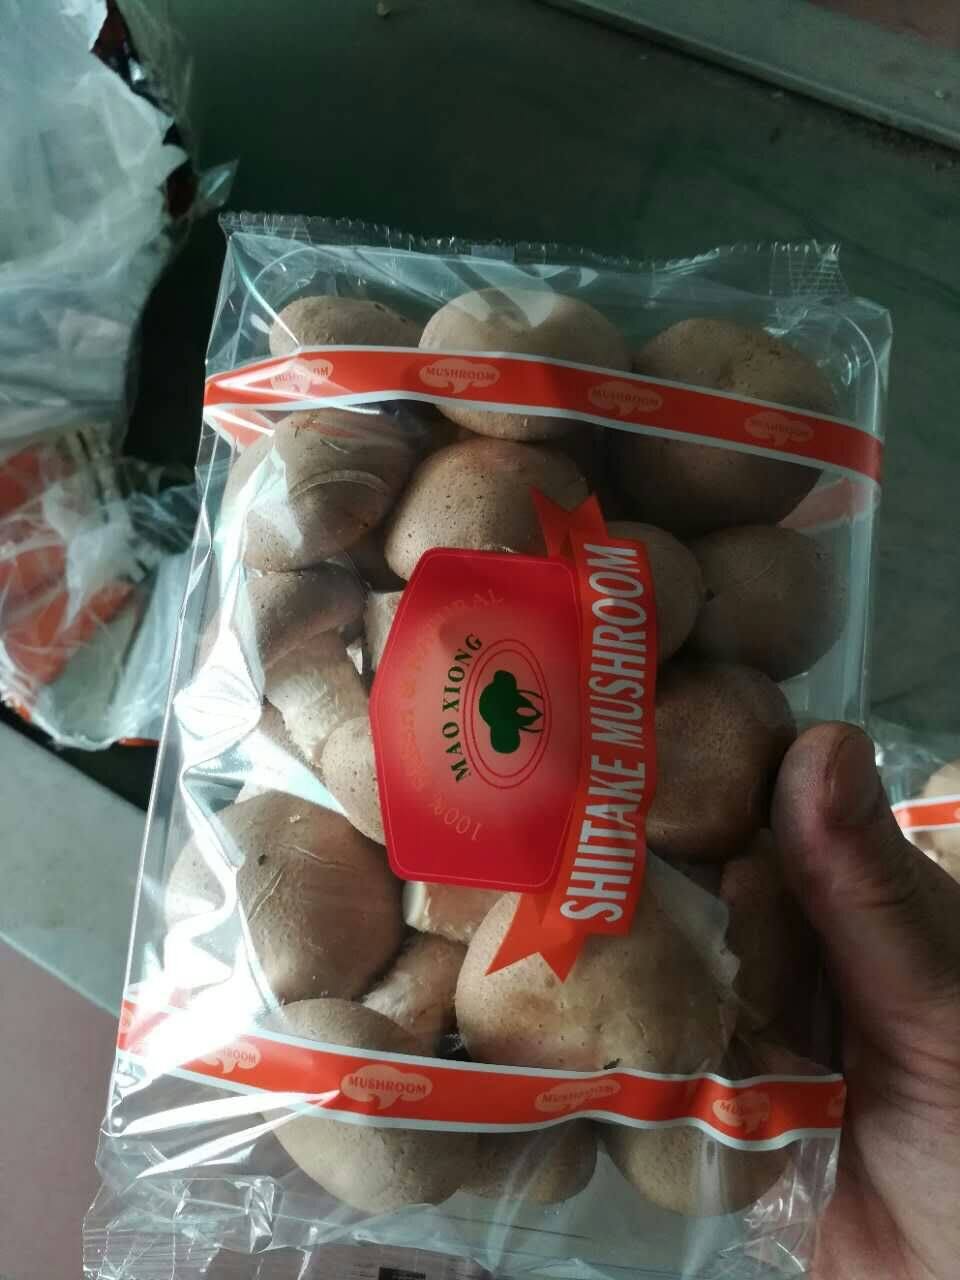 Edible mushroom packaging machine